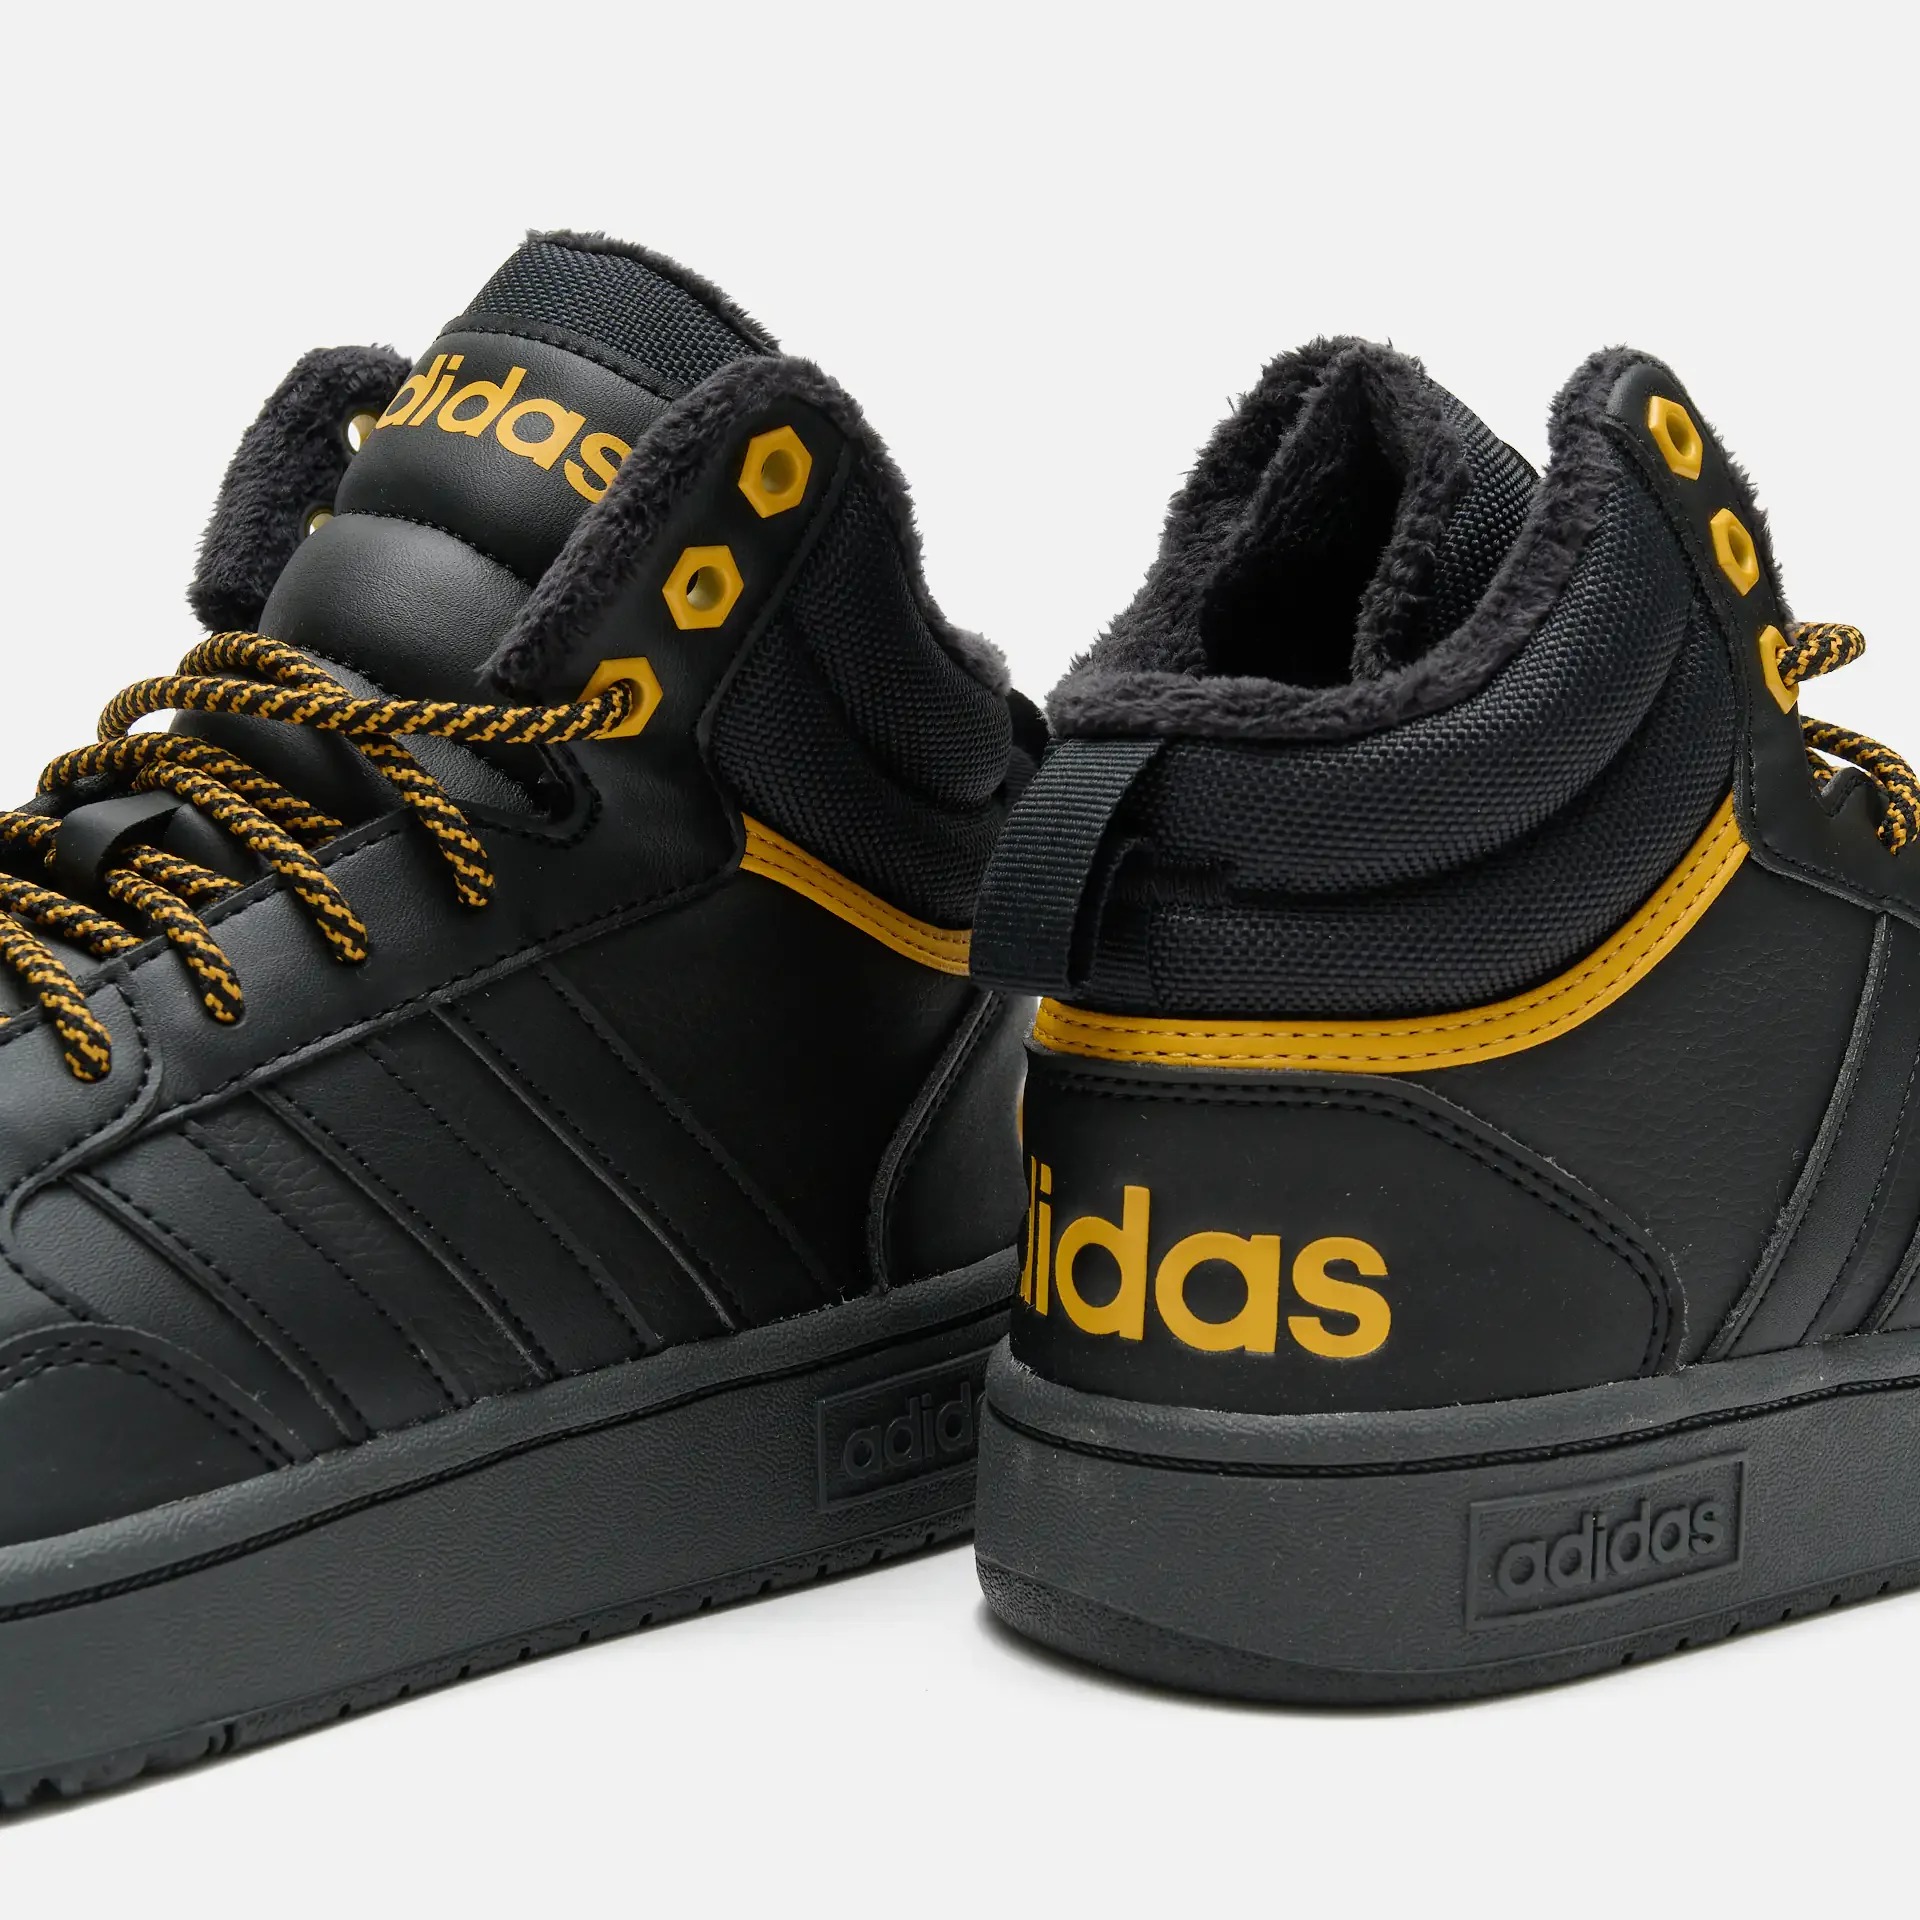 adidas Hoops 3.0 Mid Wtr Cblack/Cblack/Preyel